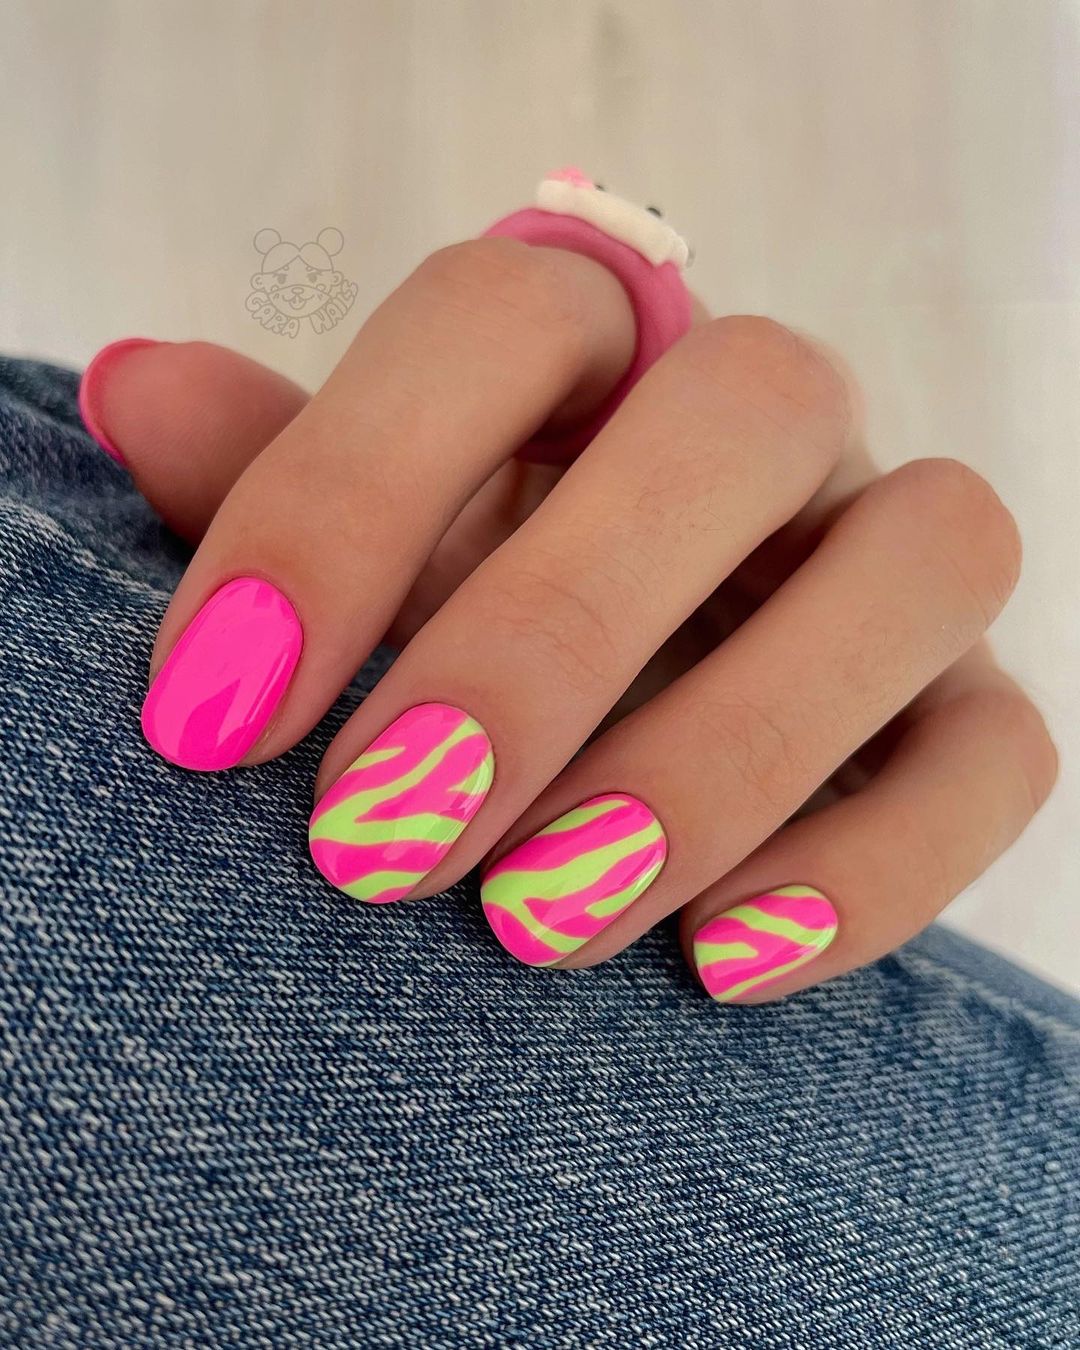 Short Bright Pink and Green Nails